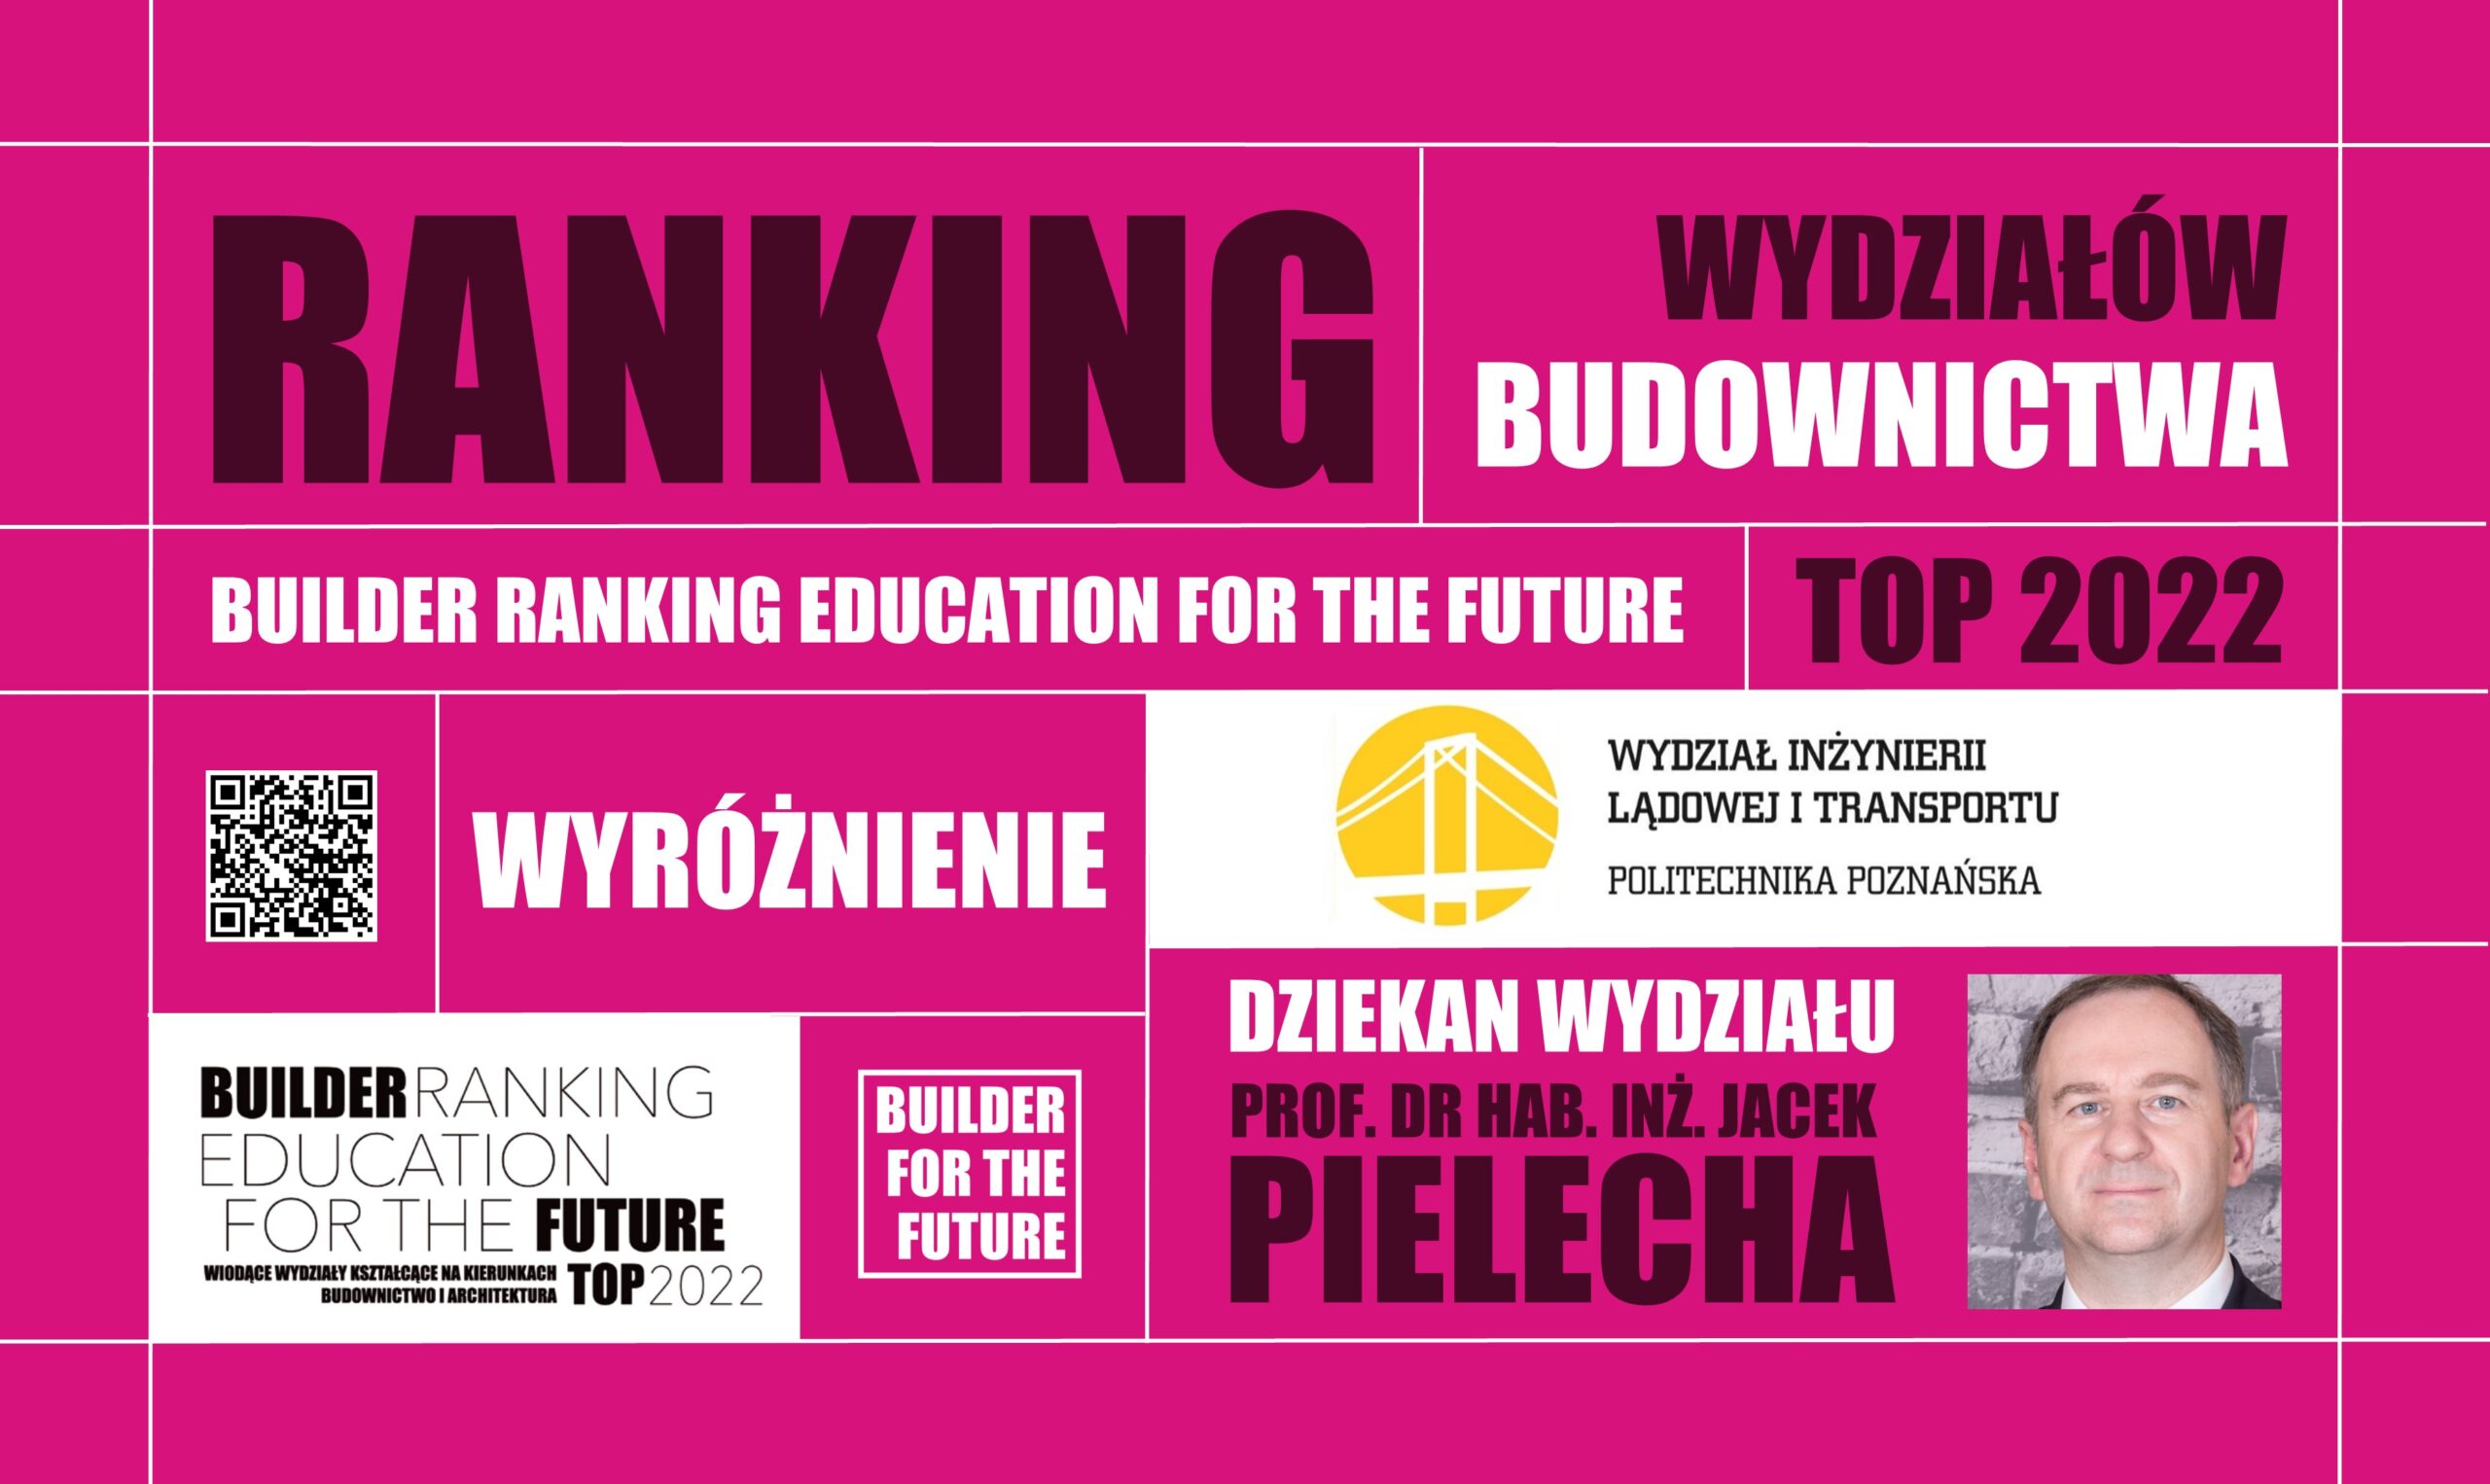 WYRÓŻNIENIE W RANKINGU WYDZIAŁÓW BUDOWNICTWA – BUILDER RANKING EDUCATION FOR THE FUTURE TOP 2022